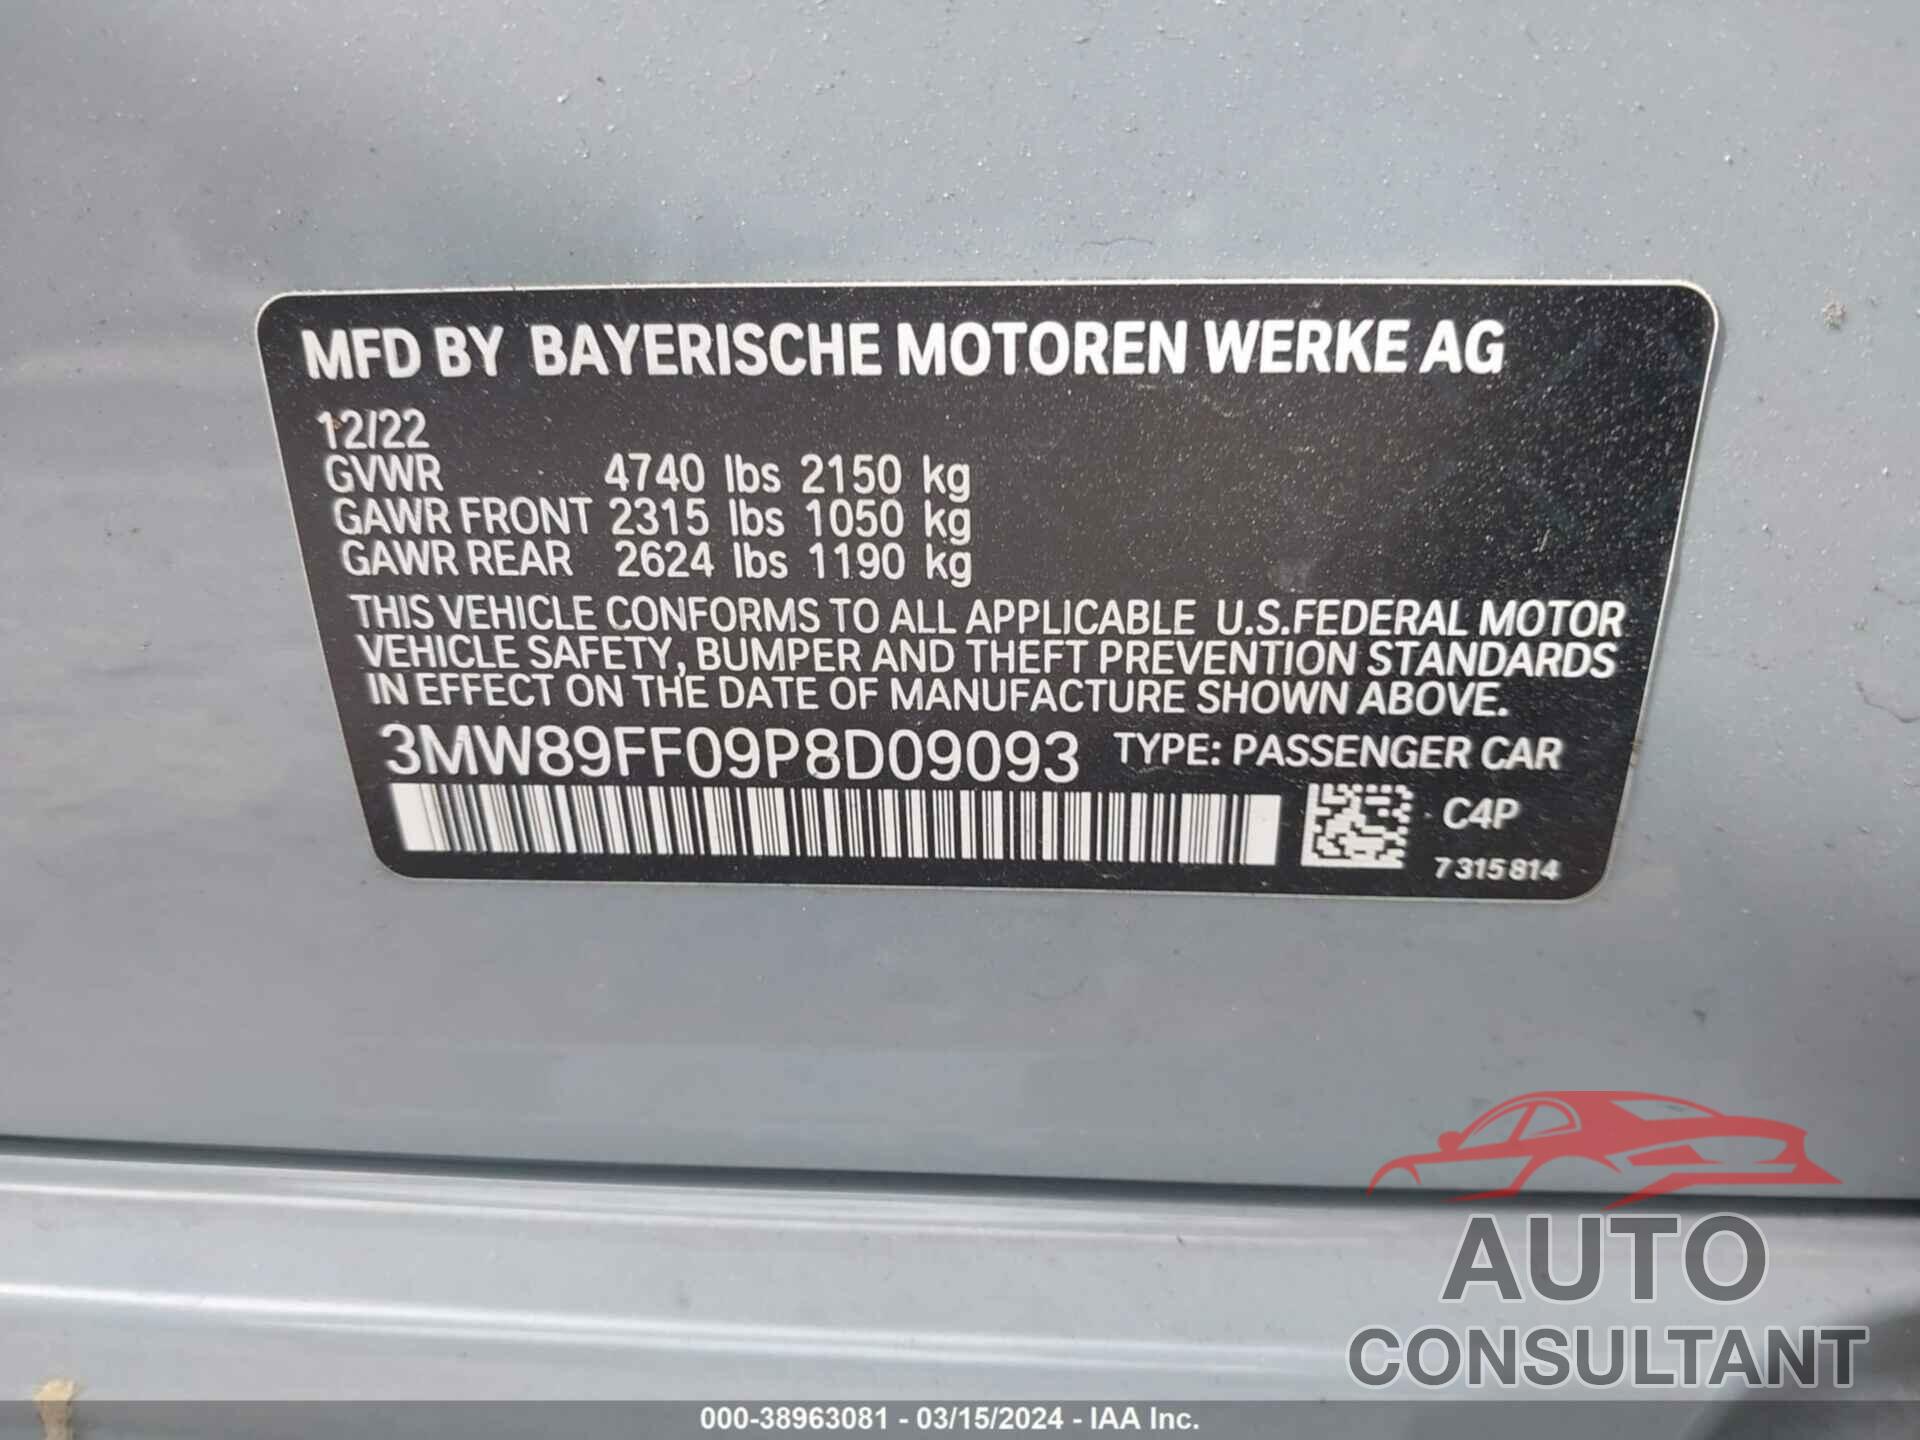 BMW 330I 2023 - 3MW89FF09P8D09093